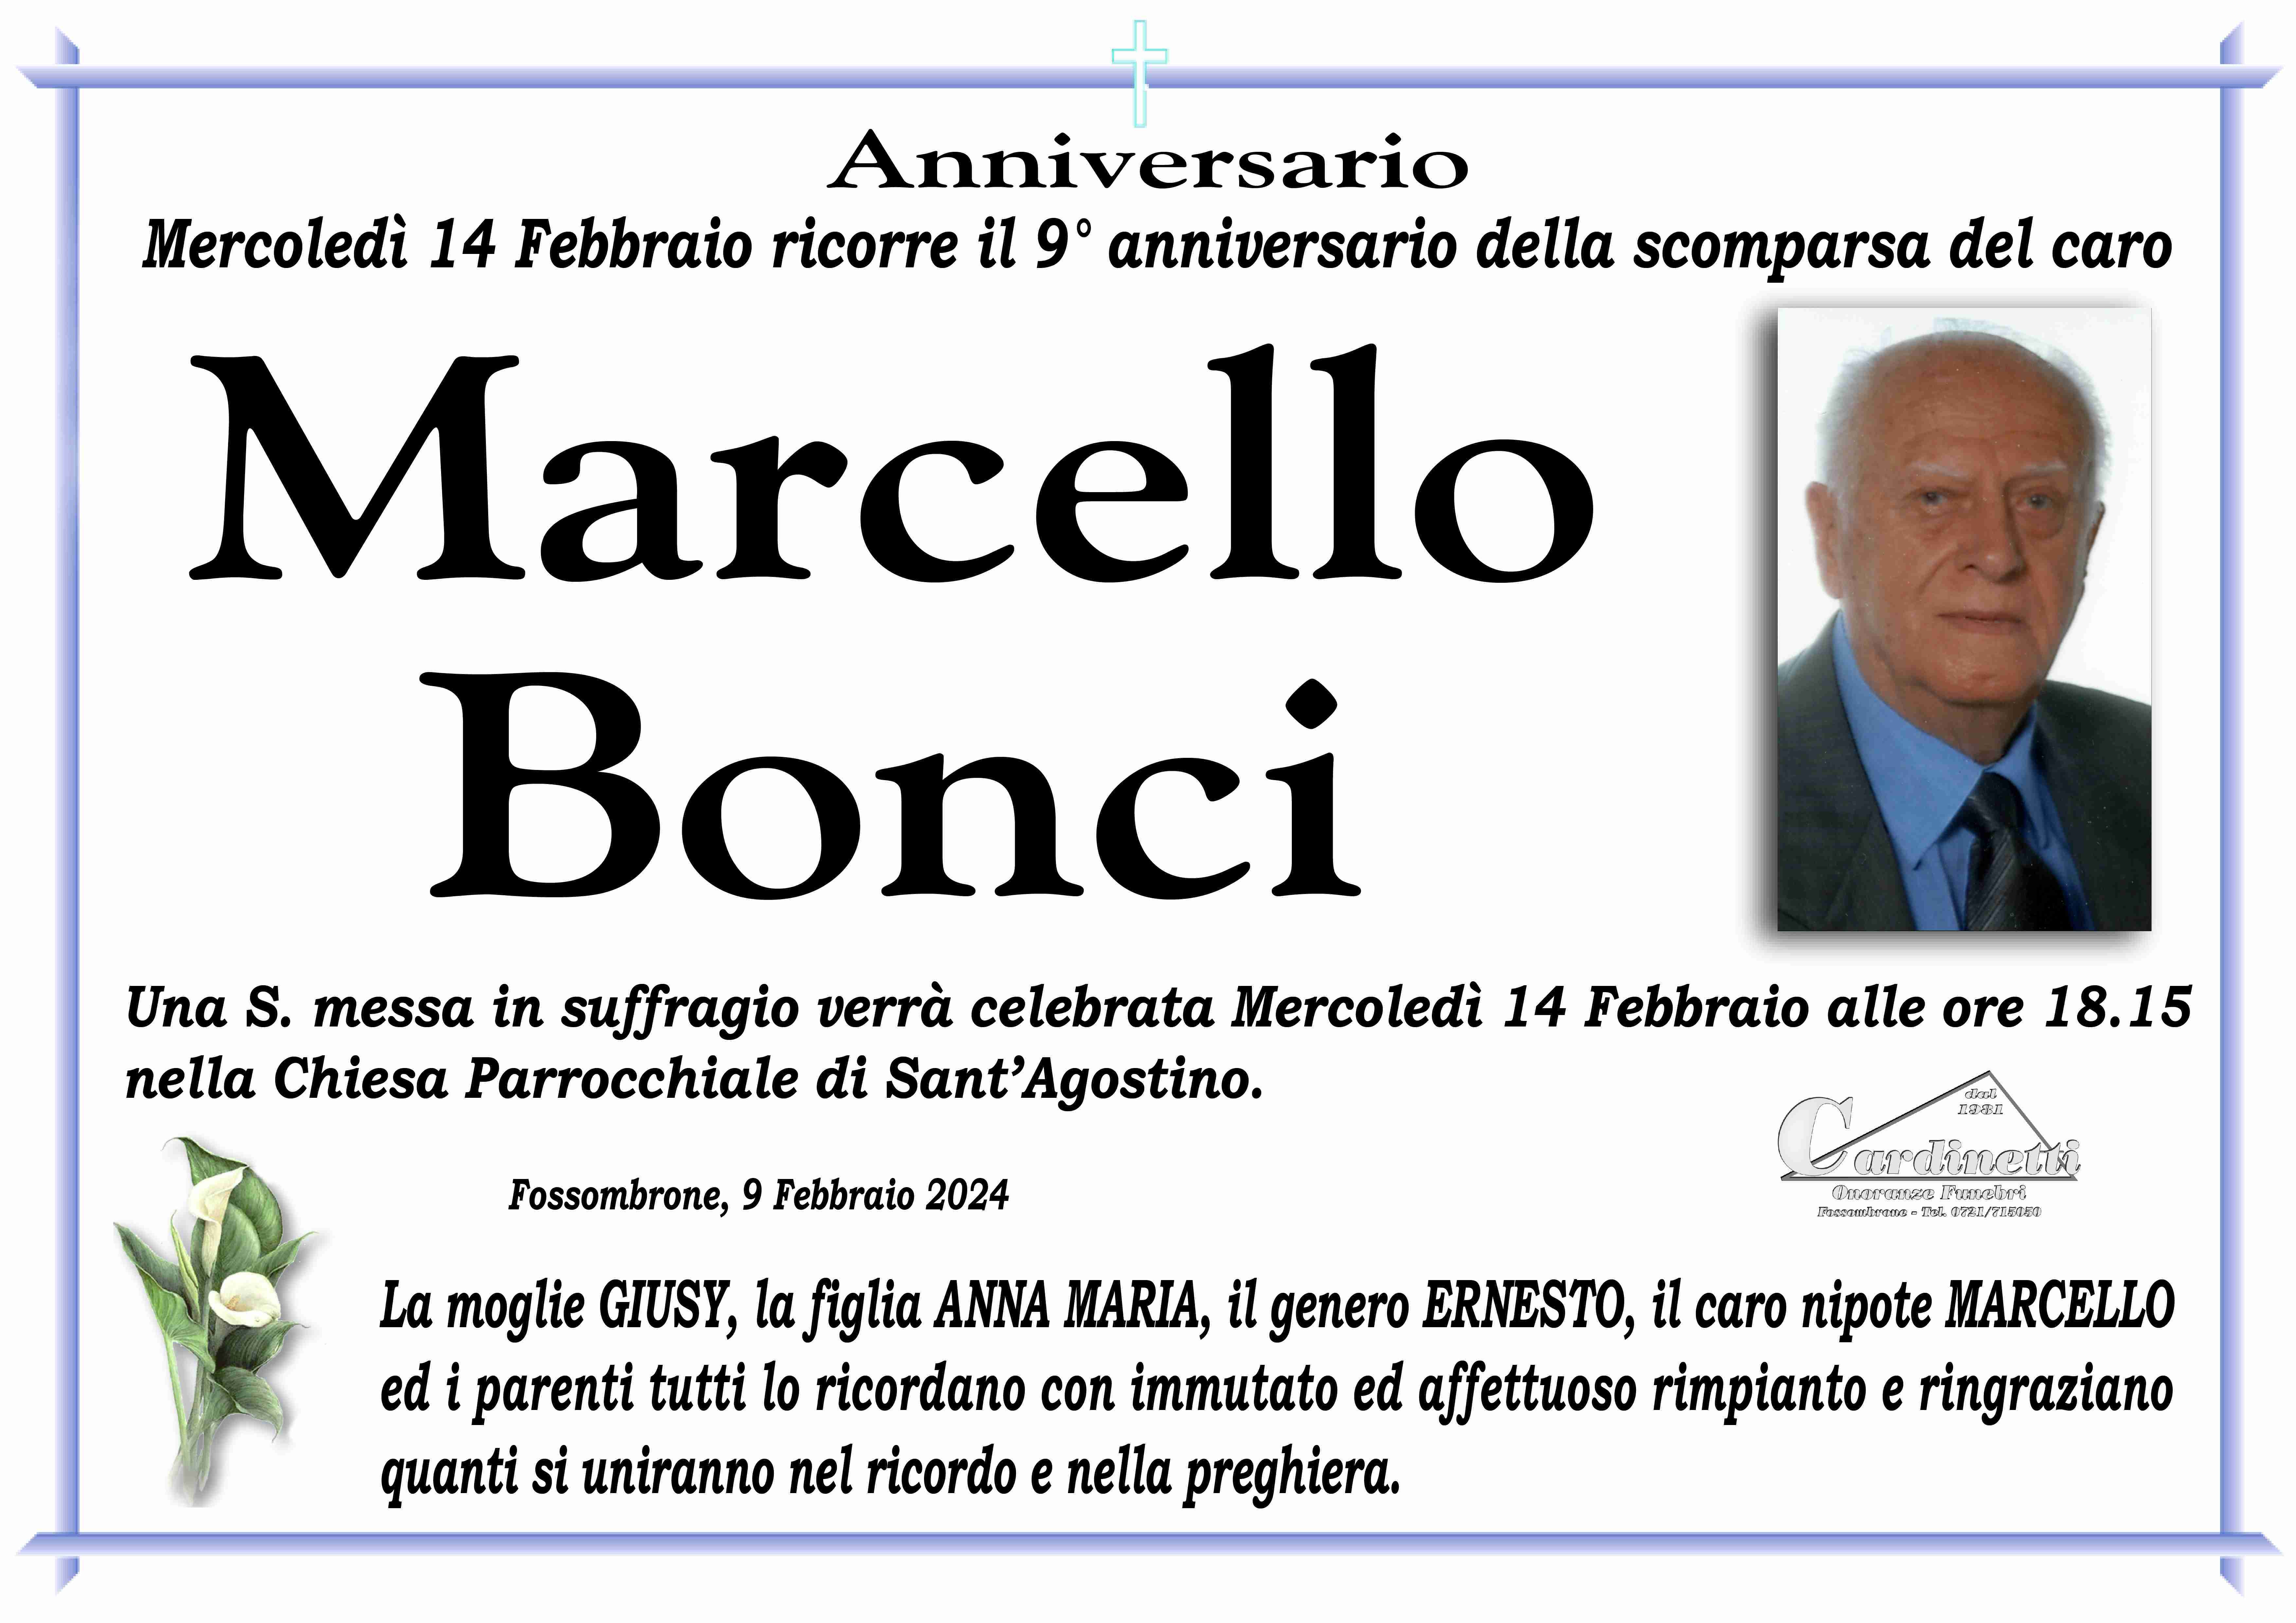 Marcello Bonci